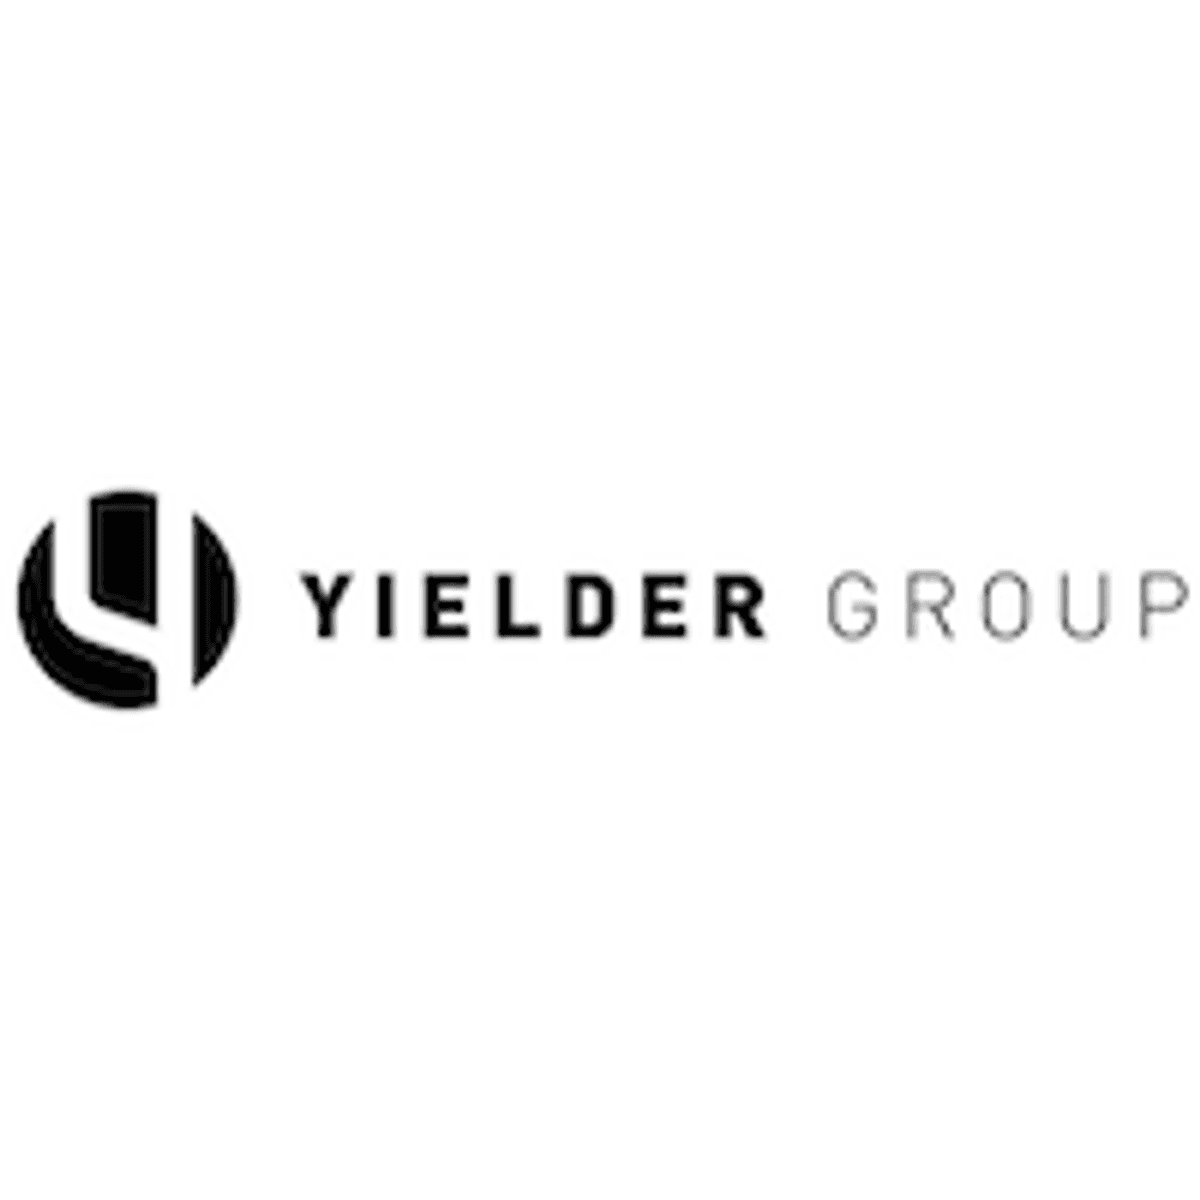 Yielder Group maakt Televak Centers onderdeel van Connectivity Factory image